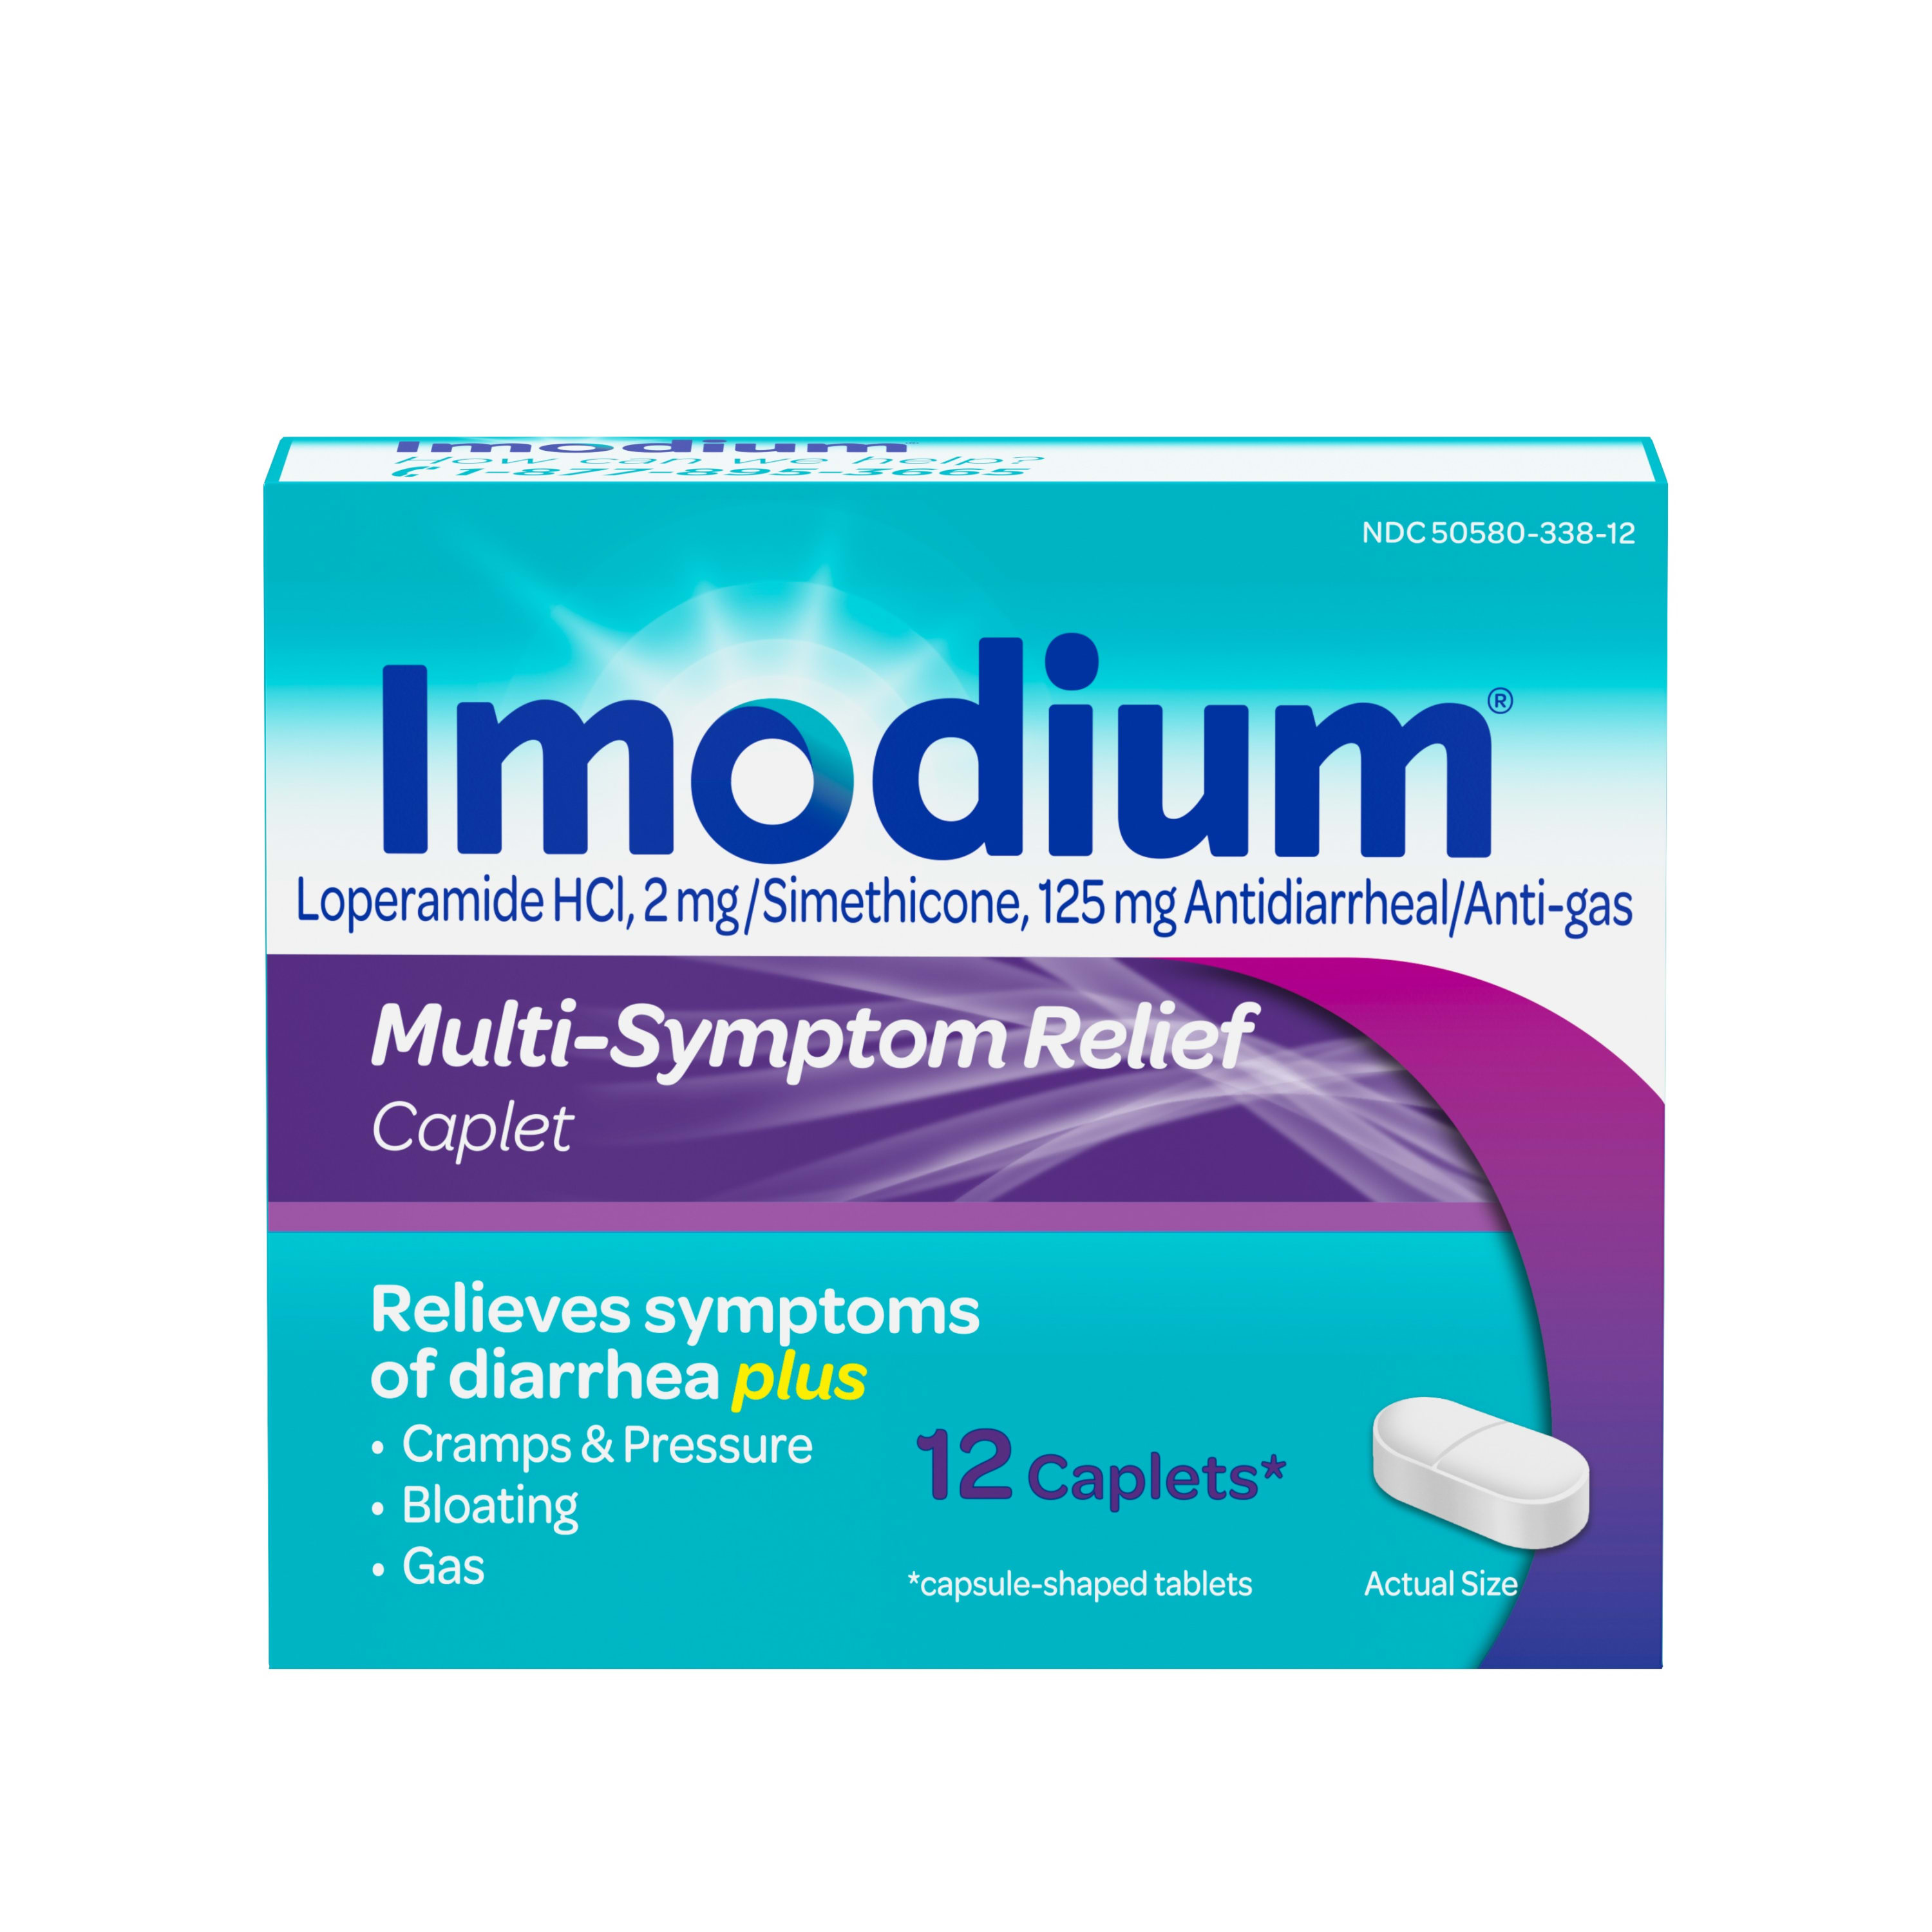 Imodium Multi-Symptom Relief Anti-Diarrheal Medicine Caplets, 12 ct. - image 3 of 13